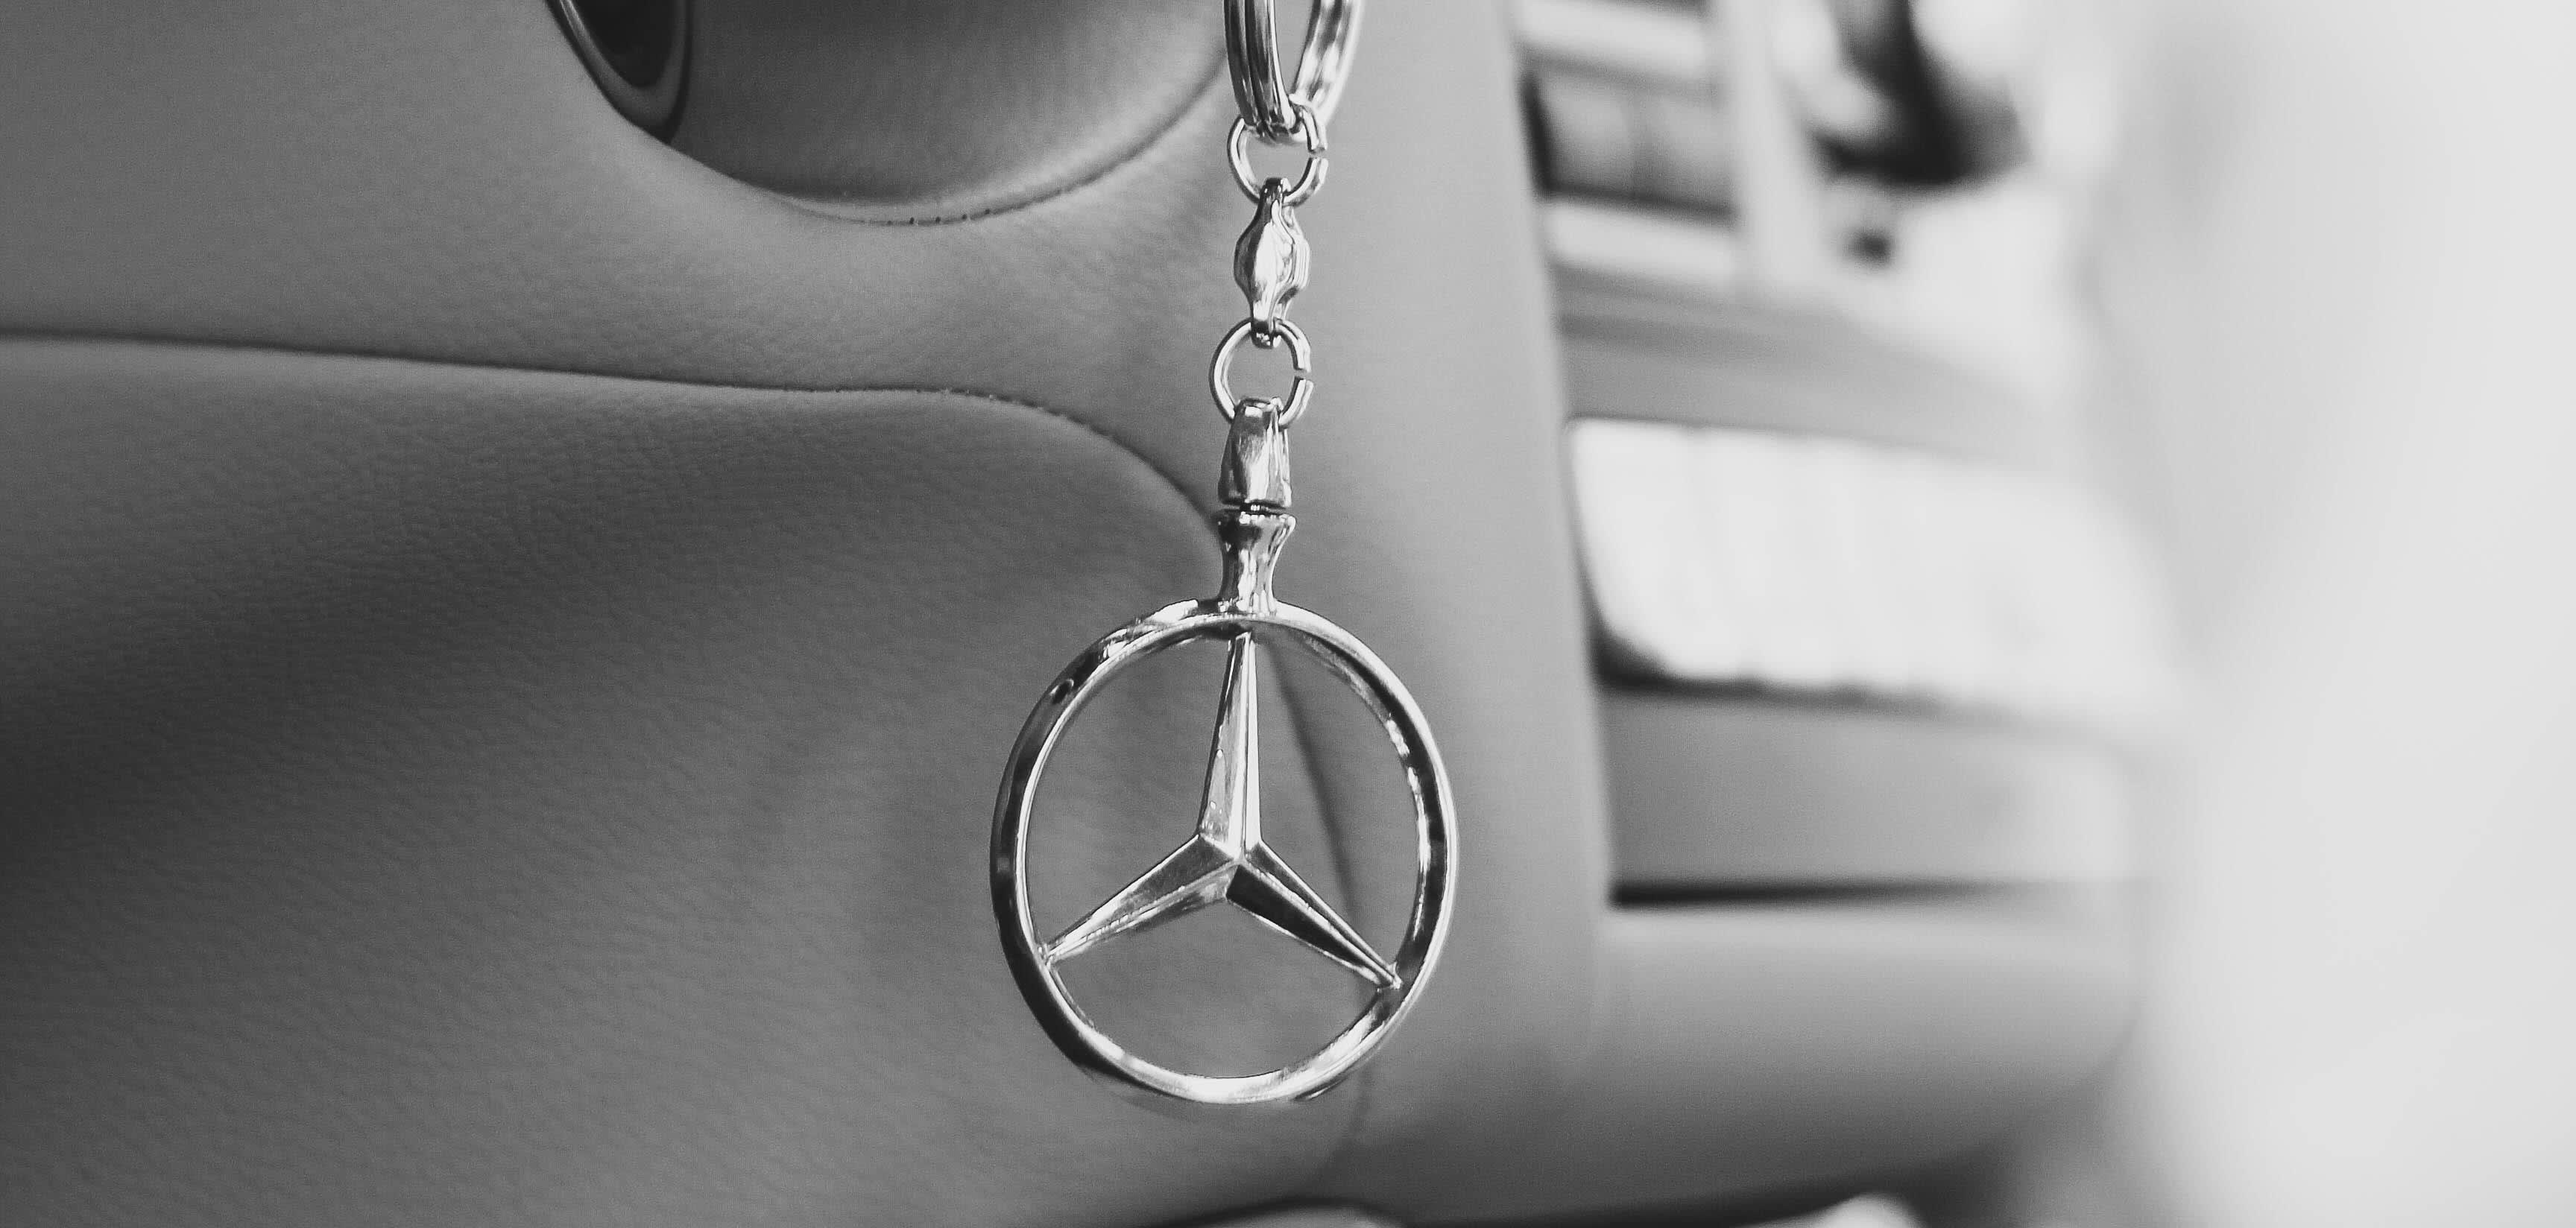 A Mercedes logo keychain